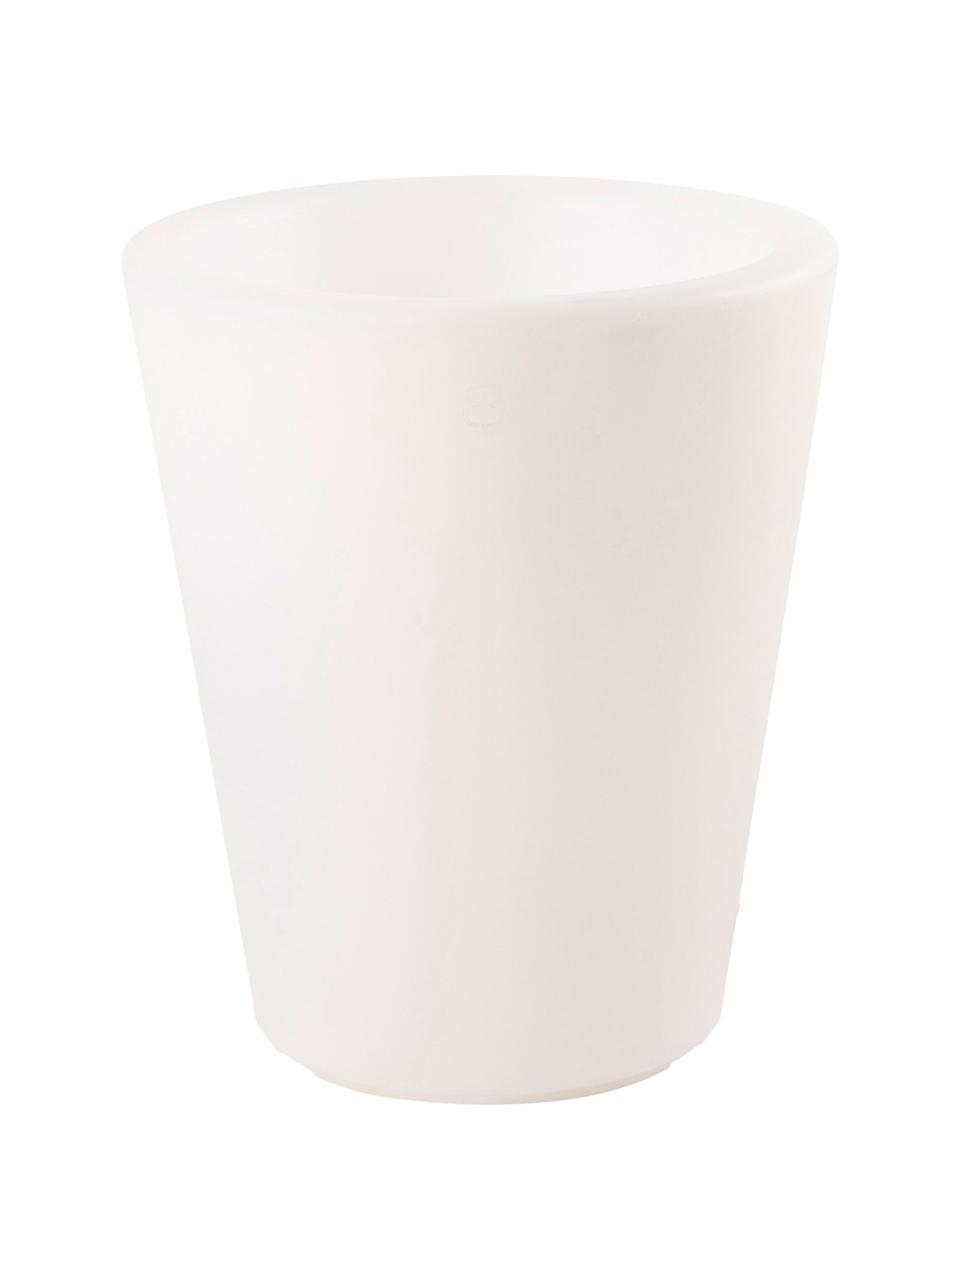 Bodenleuchte Shining Pot mit Stecker, Leuchte: Kunststoff, Weiss, Ø 34 x H 39 cm